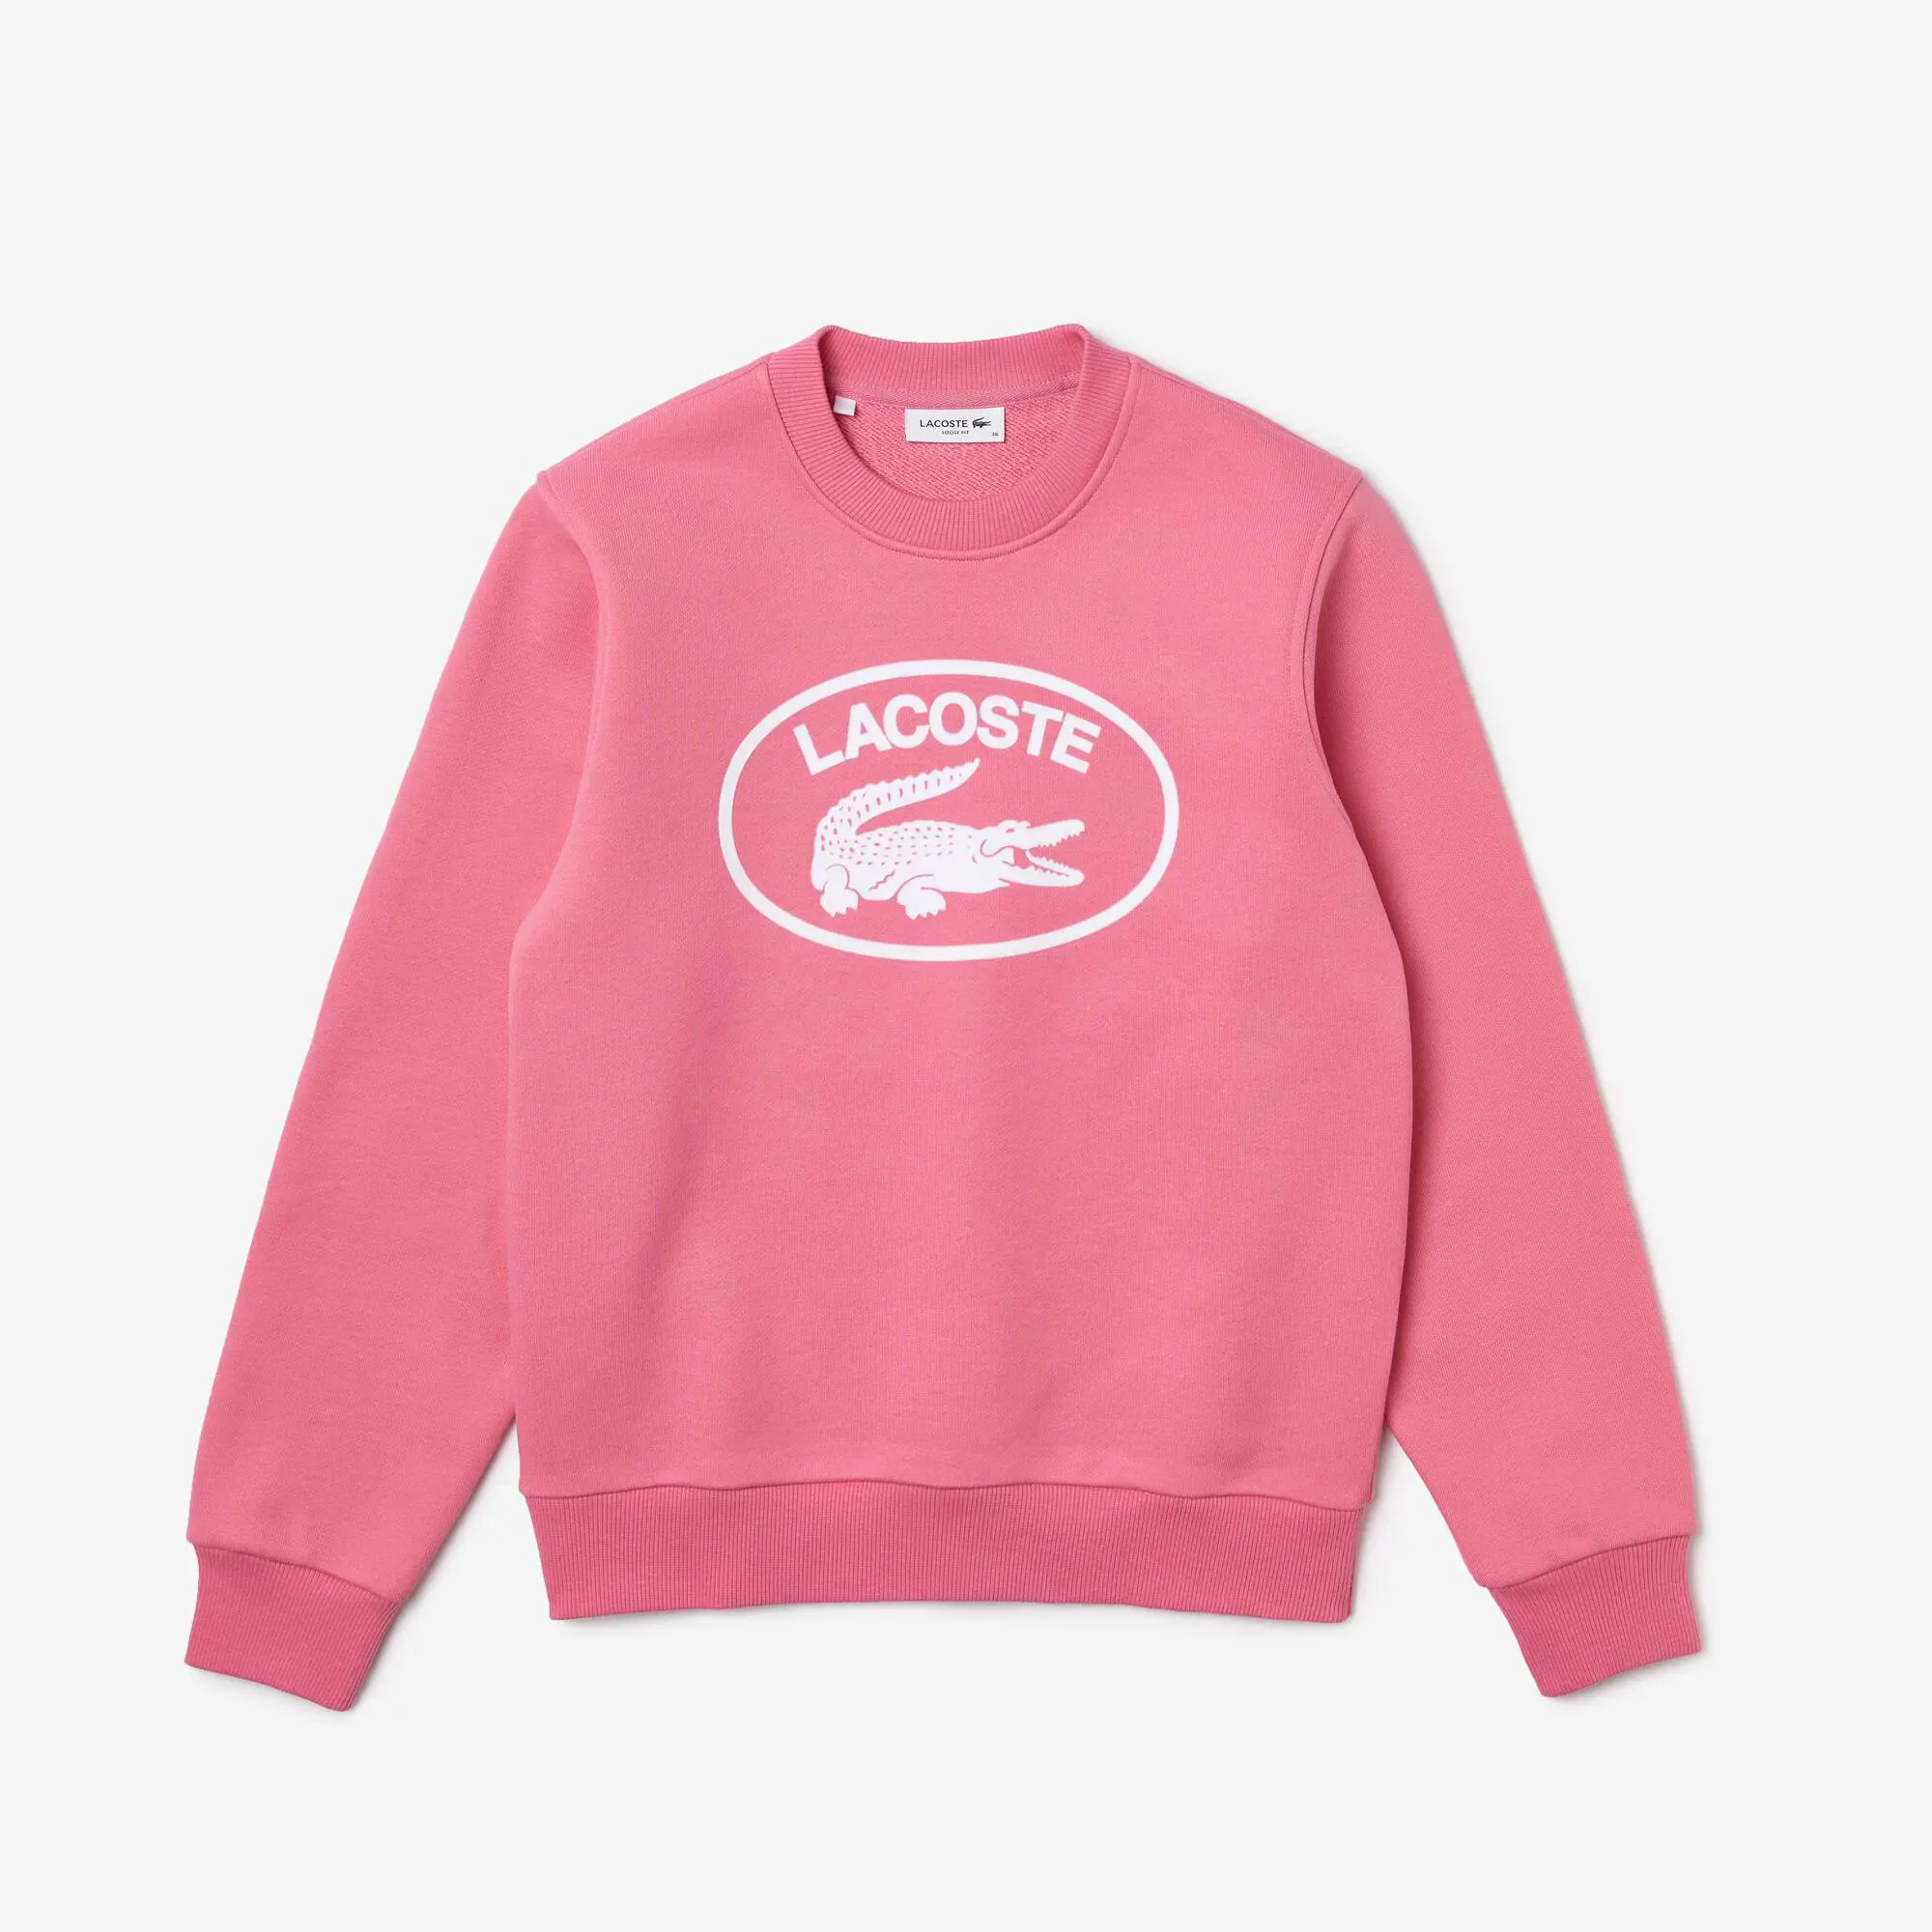 Lacoste Women's Loose Fit Organic Cotton Fleece Sweatshirt. 2